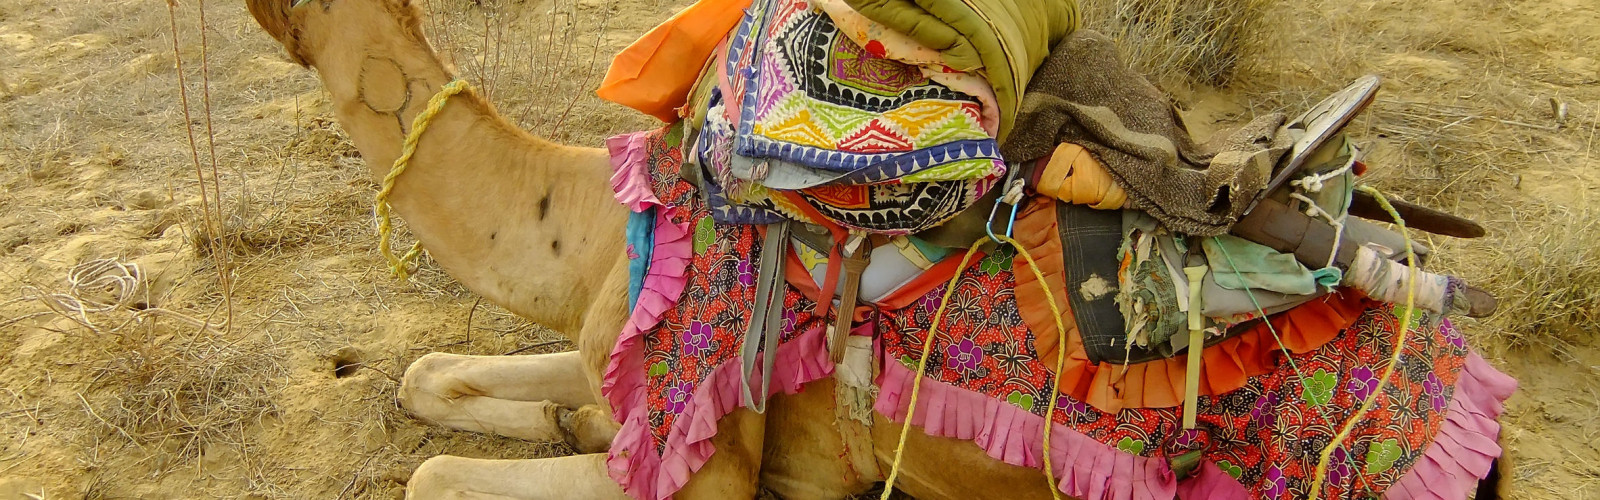 Camel Fair Tour 2015, Pushkar, Rajasthan